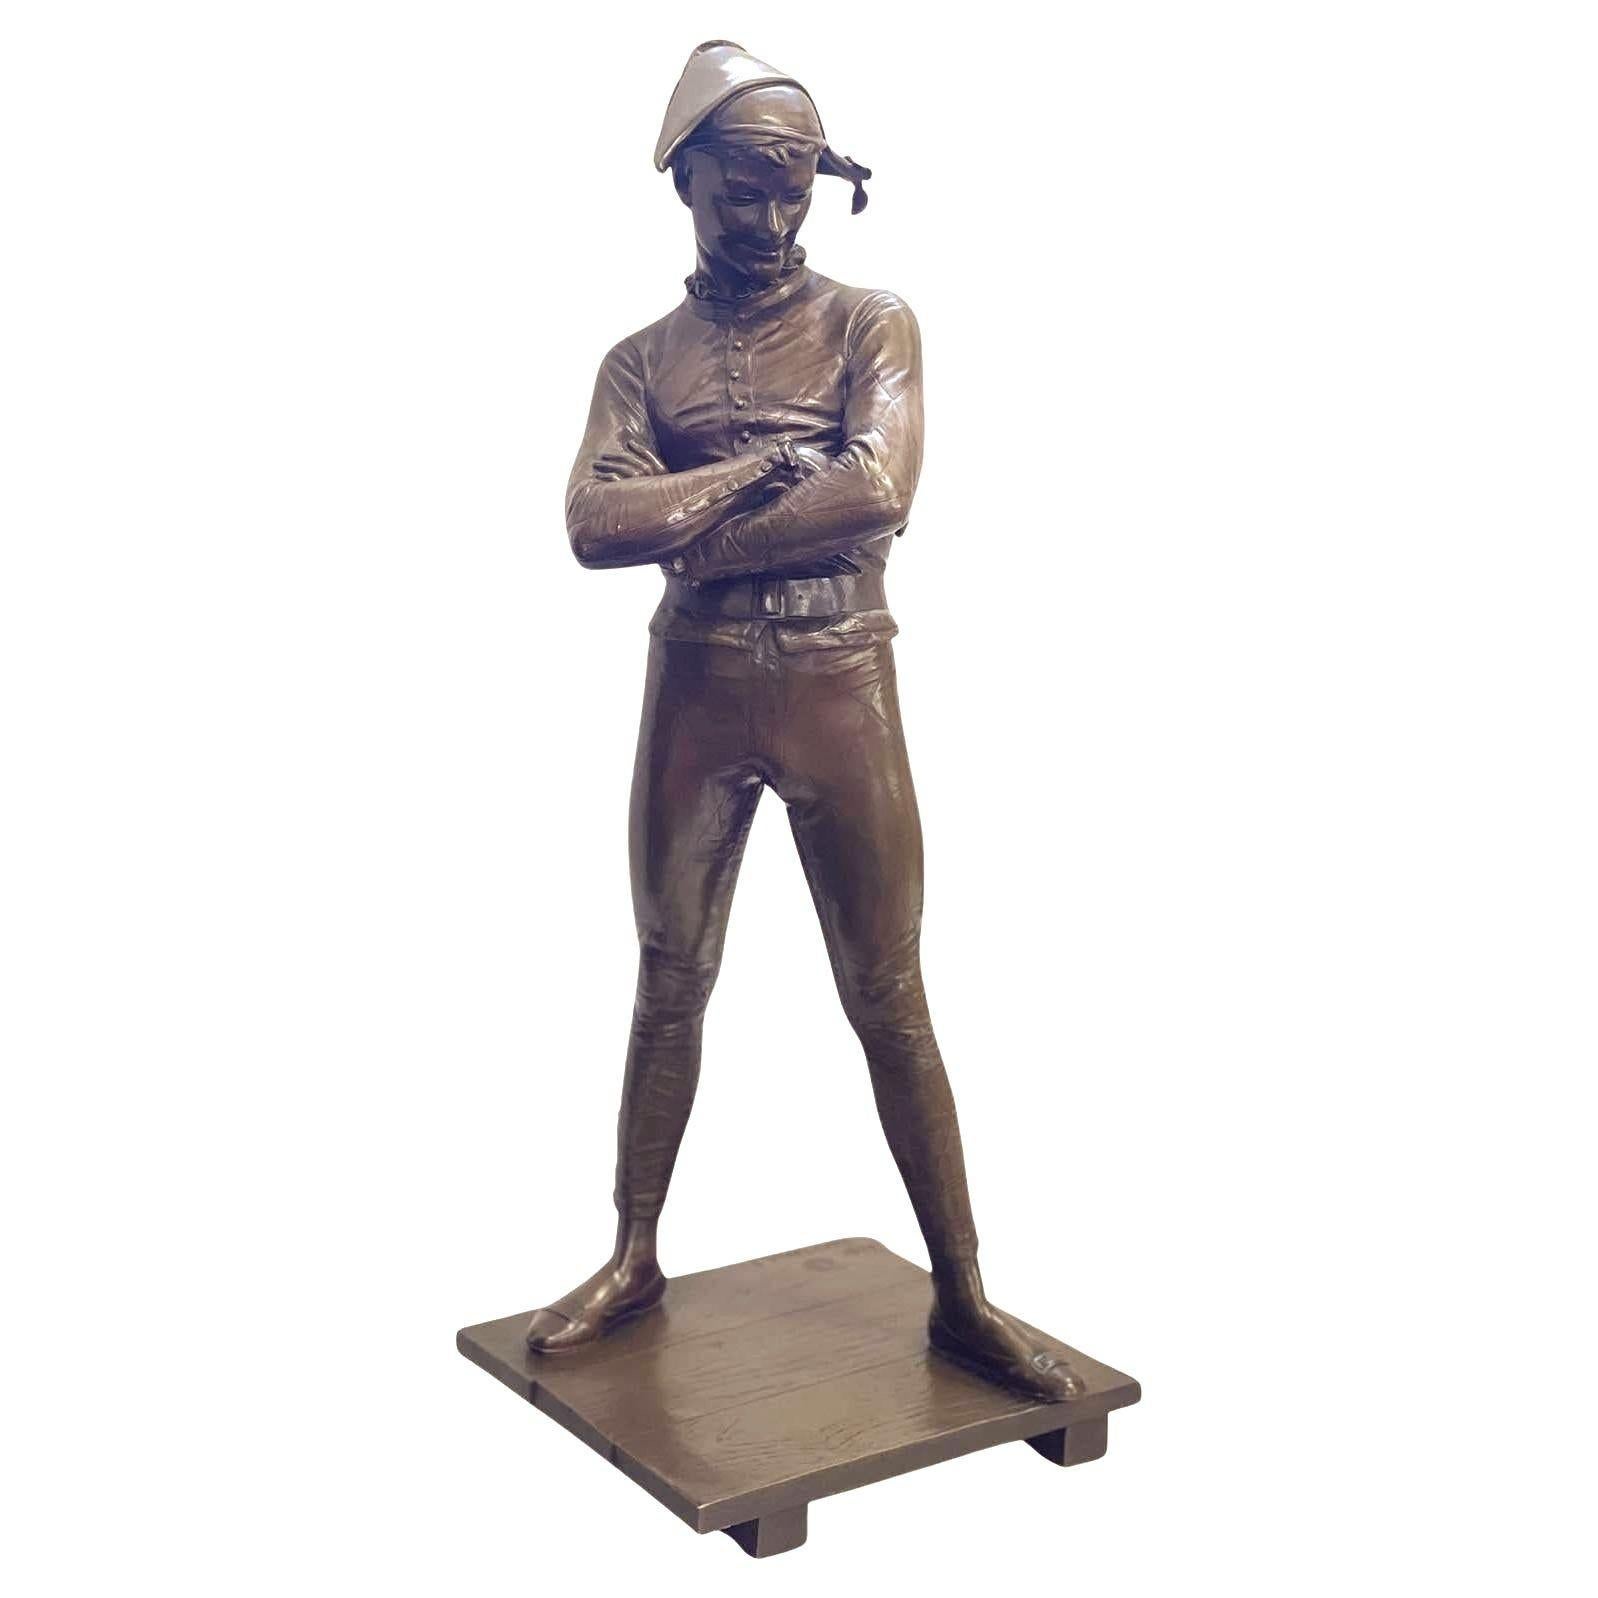 Statuette en bronze d'Arlequin par Charles-René de Paul de Saint-Marceaux.
Distribution par Barbedienne.
Un Arlequin espiègle, en pleine contemplation les bras croisés, arborant un sourire et un masque, monte comme il se doit sur les planches dans